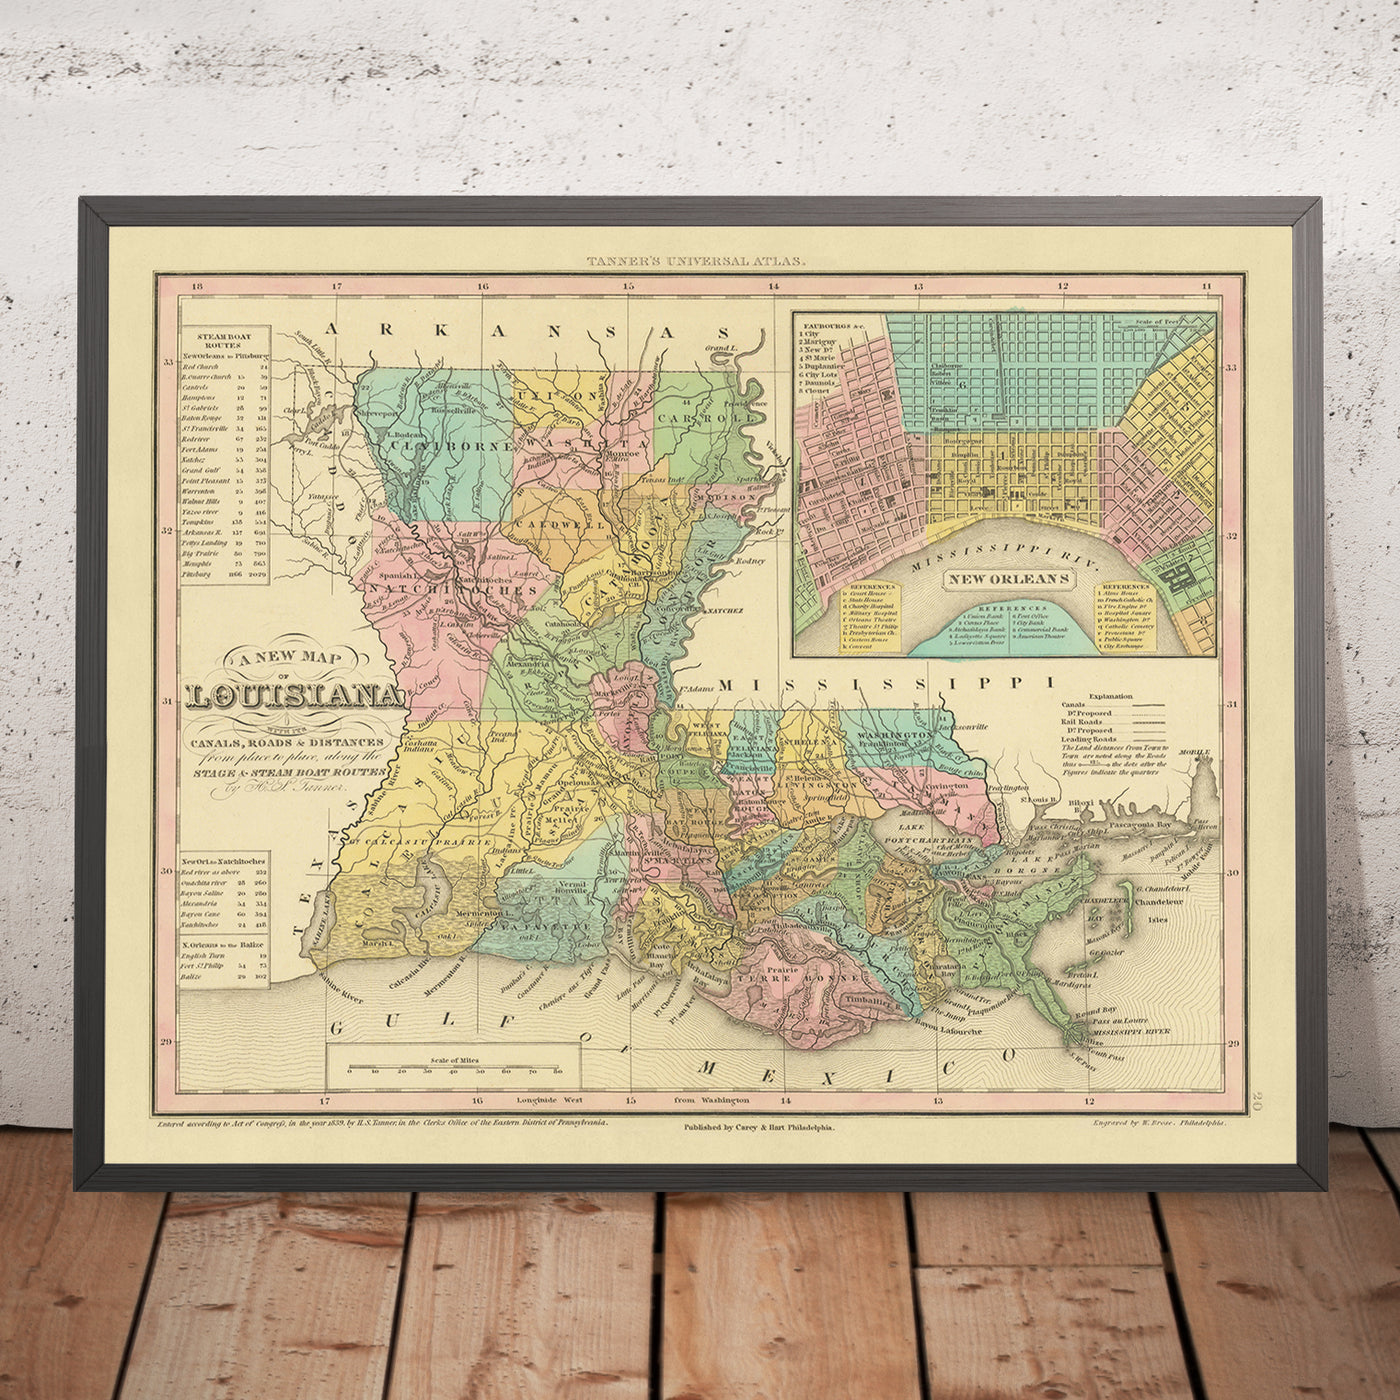 Ancienne carte de la Louisiane par Tanner, 1843 : La Nouvelle-Orléans, Baton Rouge, le lac Pontchartrain, le delta du fleuve Mississippi et le golfe du Mexique